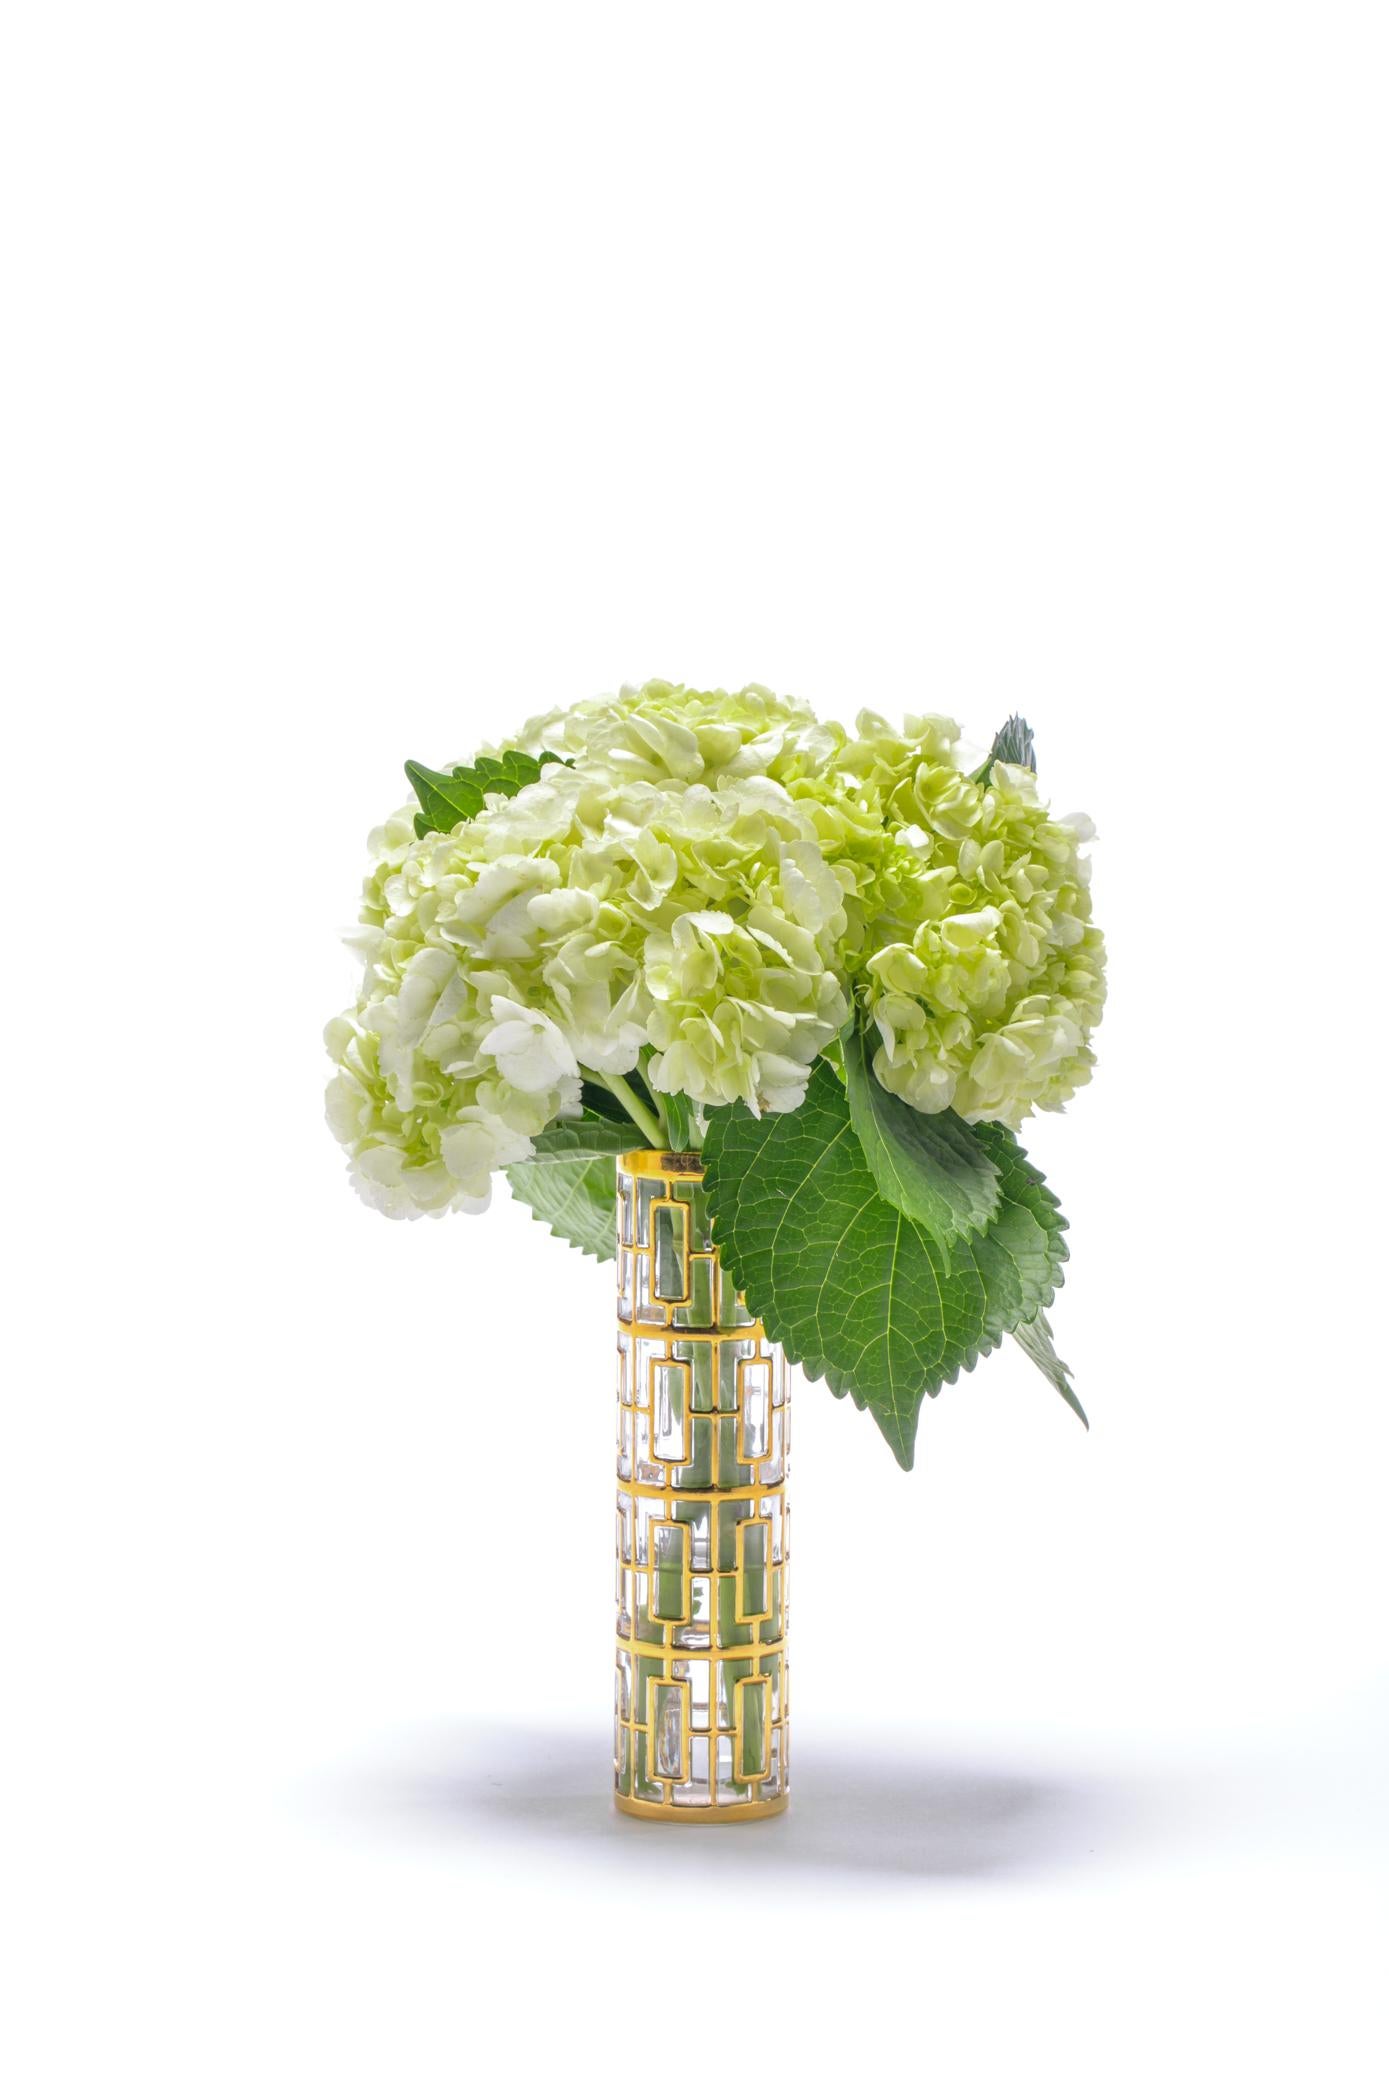 Ce vase unique et exaltant, qui offre un style et une sophistication de haut niveau depuis les années 60, est l'un des modèles de verrerie moderne du milieu du siècle les plus célèbres de l'époque et d'aujourd'hui. La meilleure des époques. Vintage